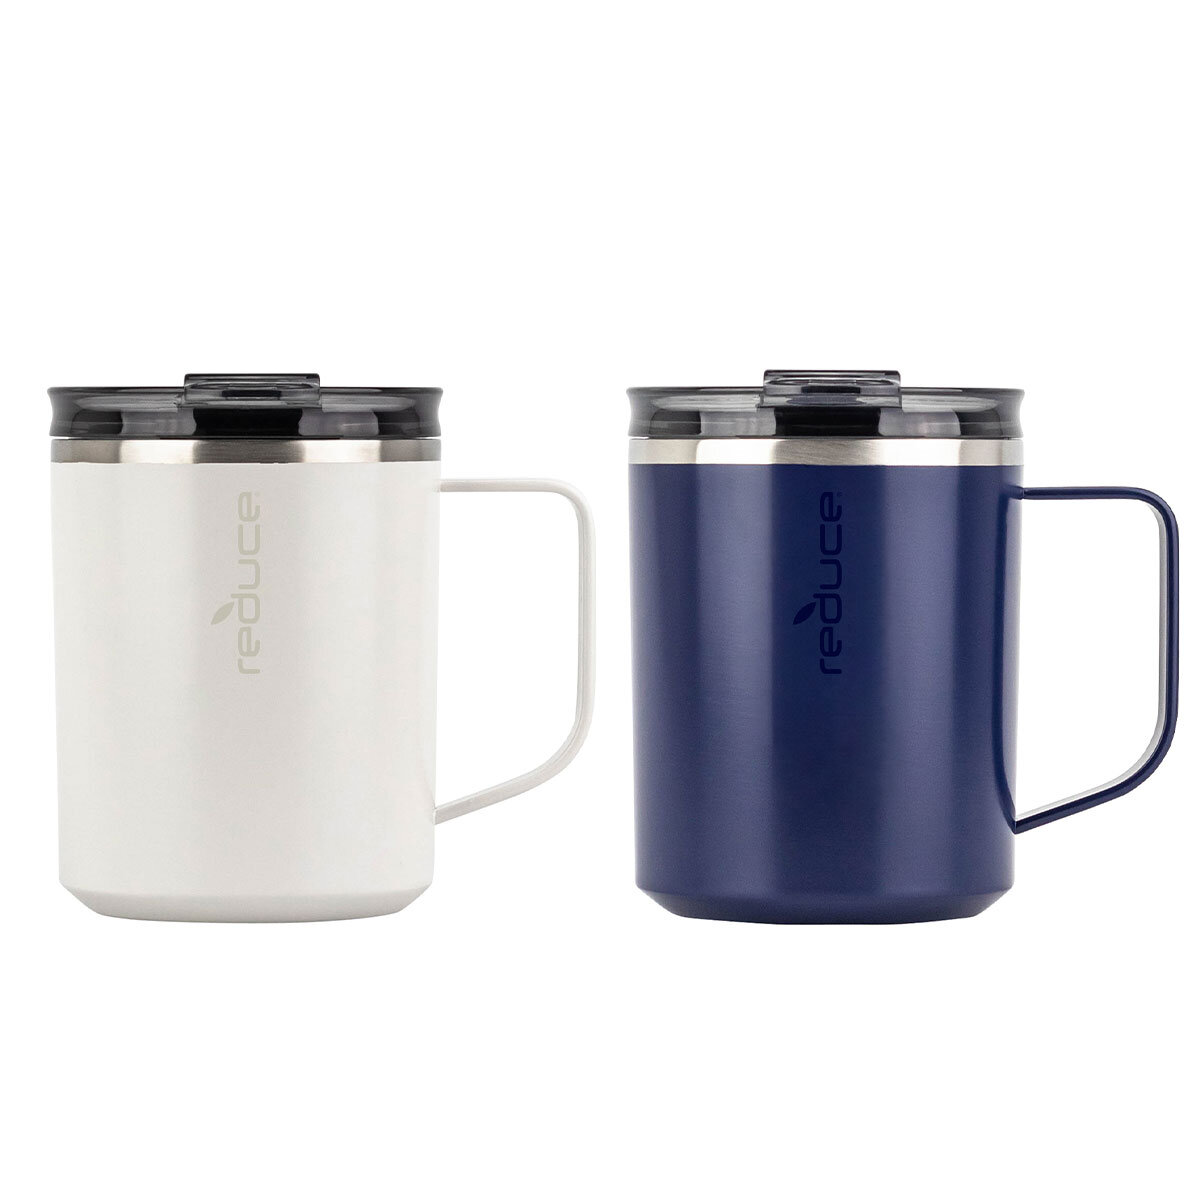 White and Blue Mug variant